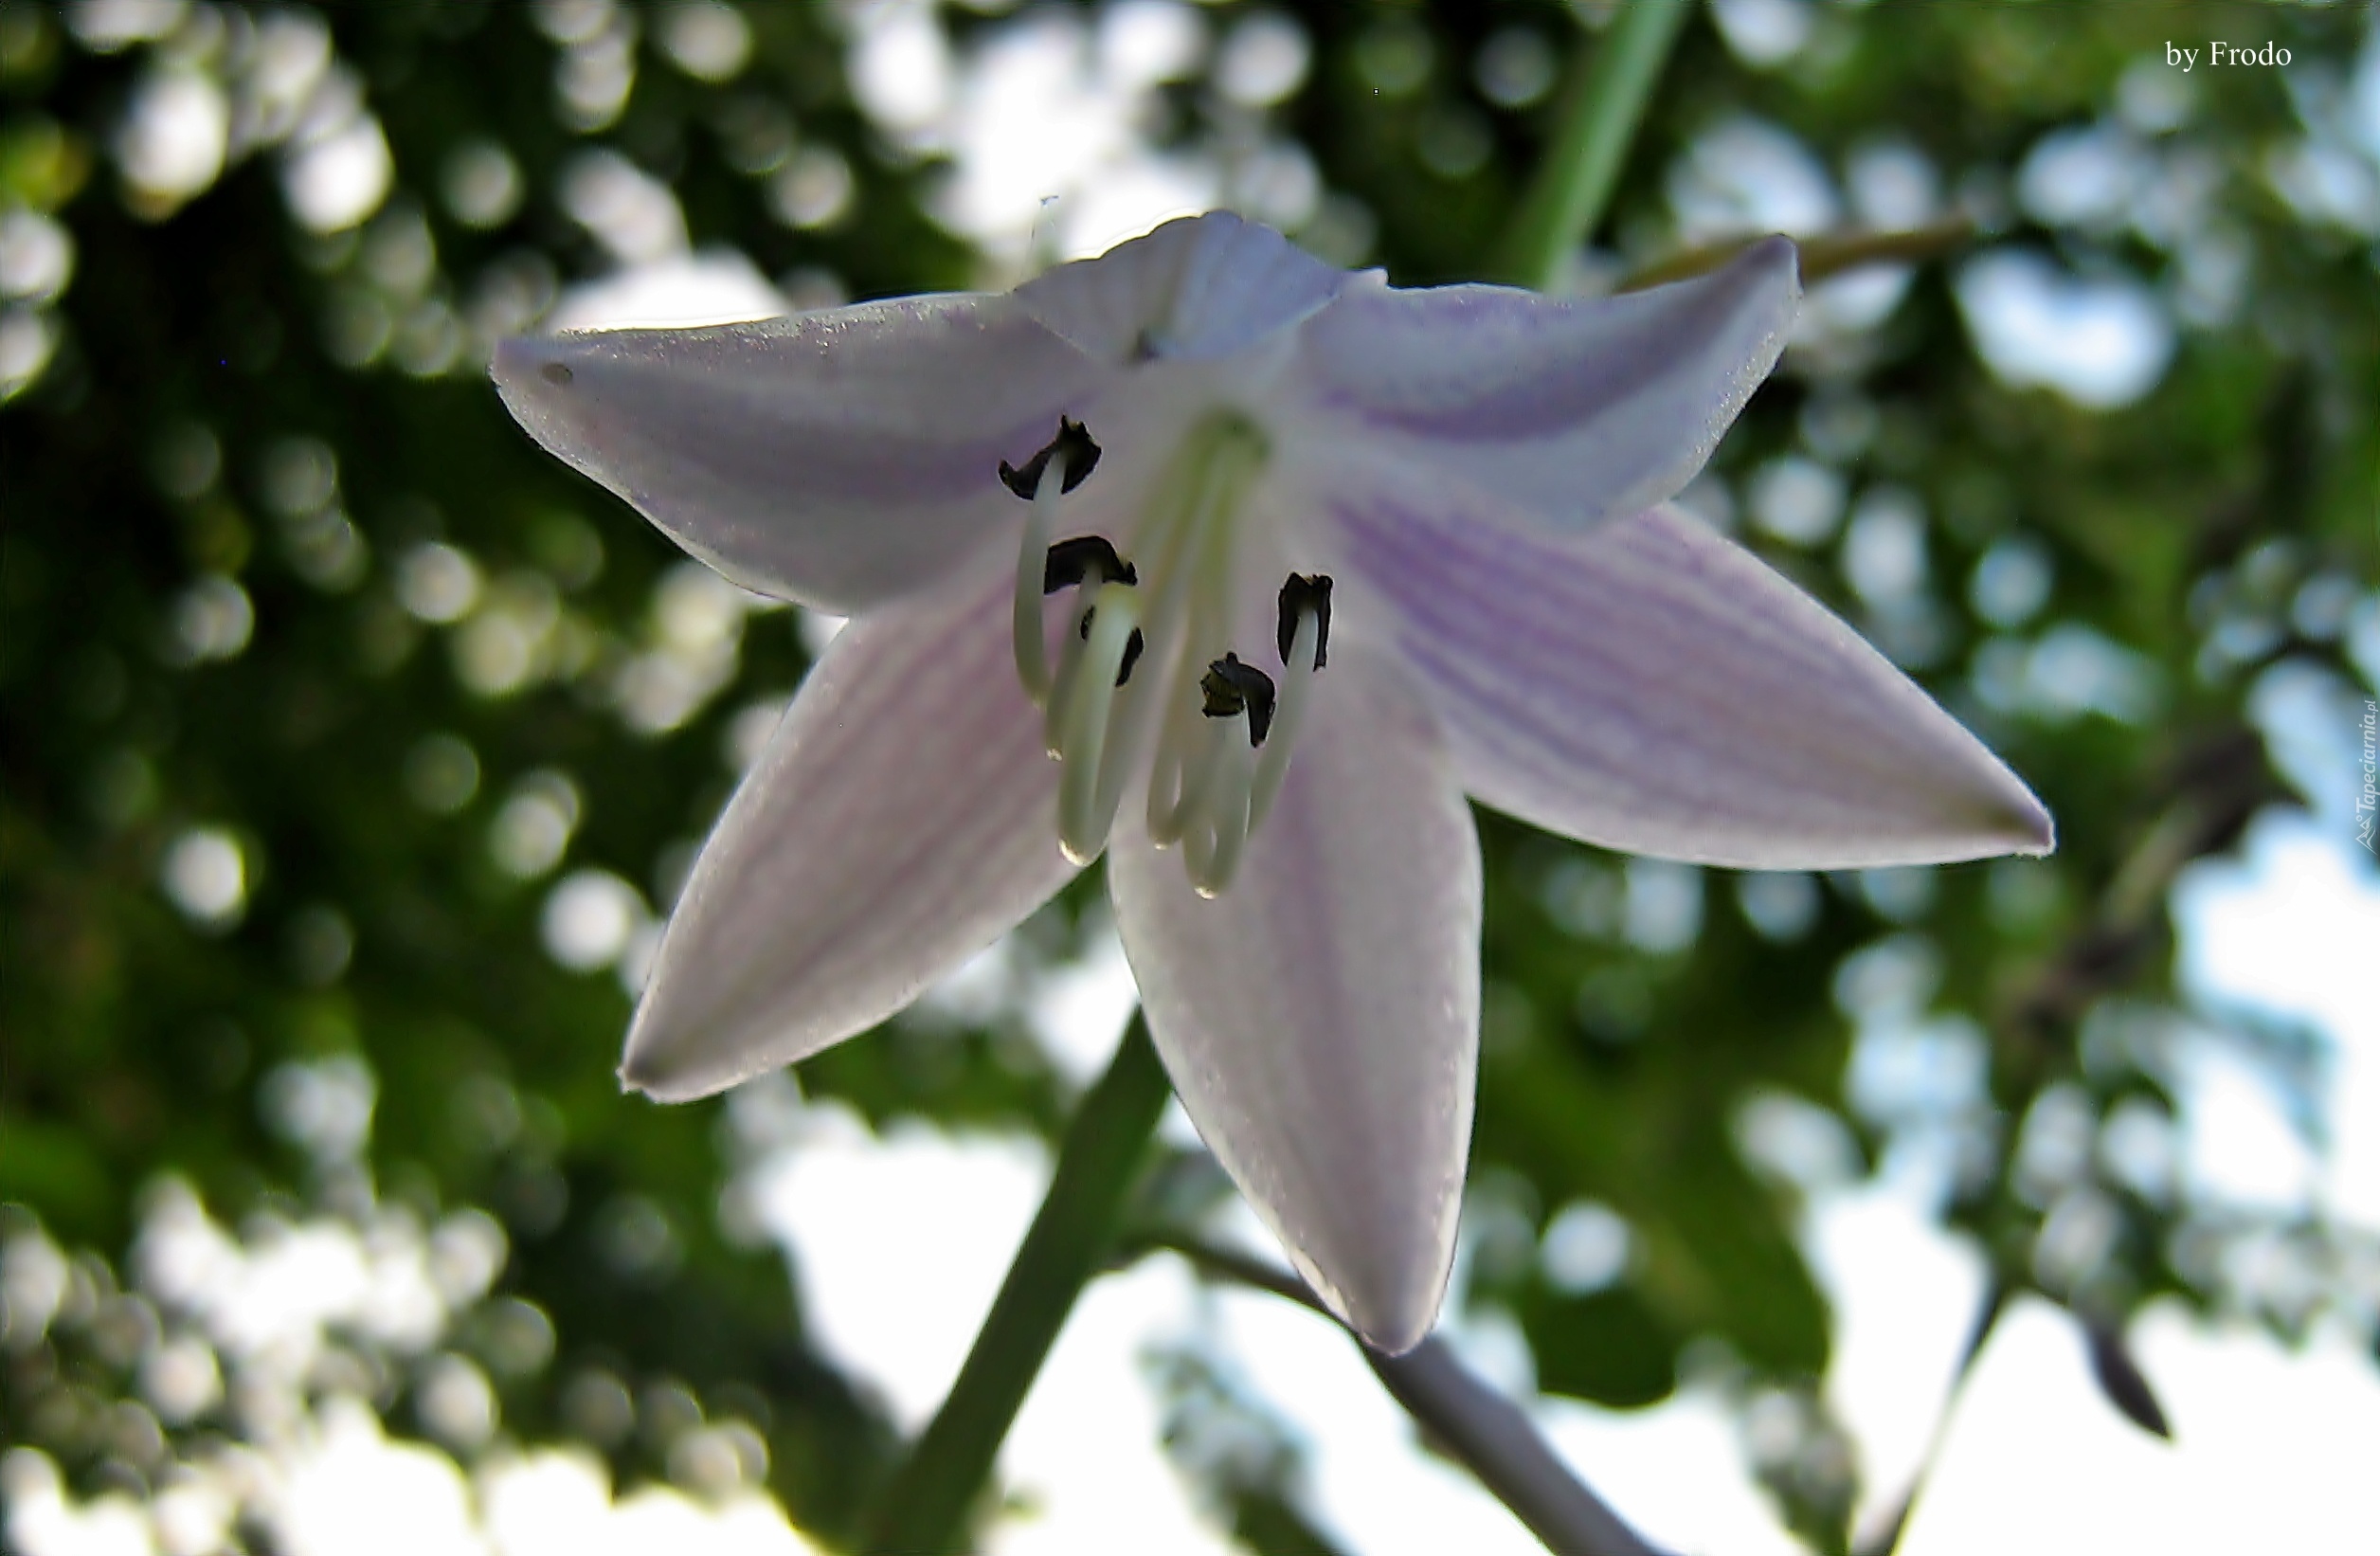 Kwiat, Biało-Fioletowy